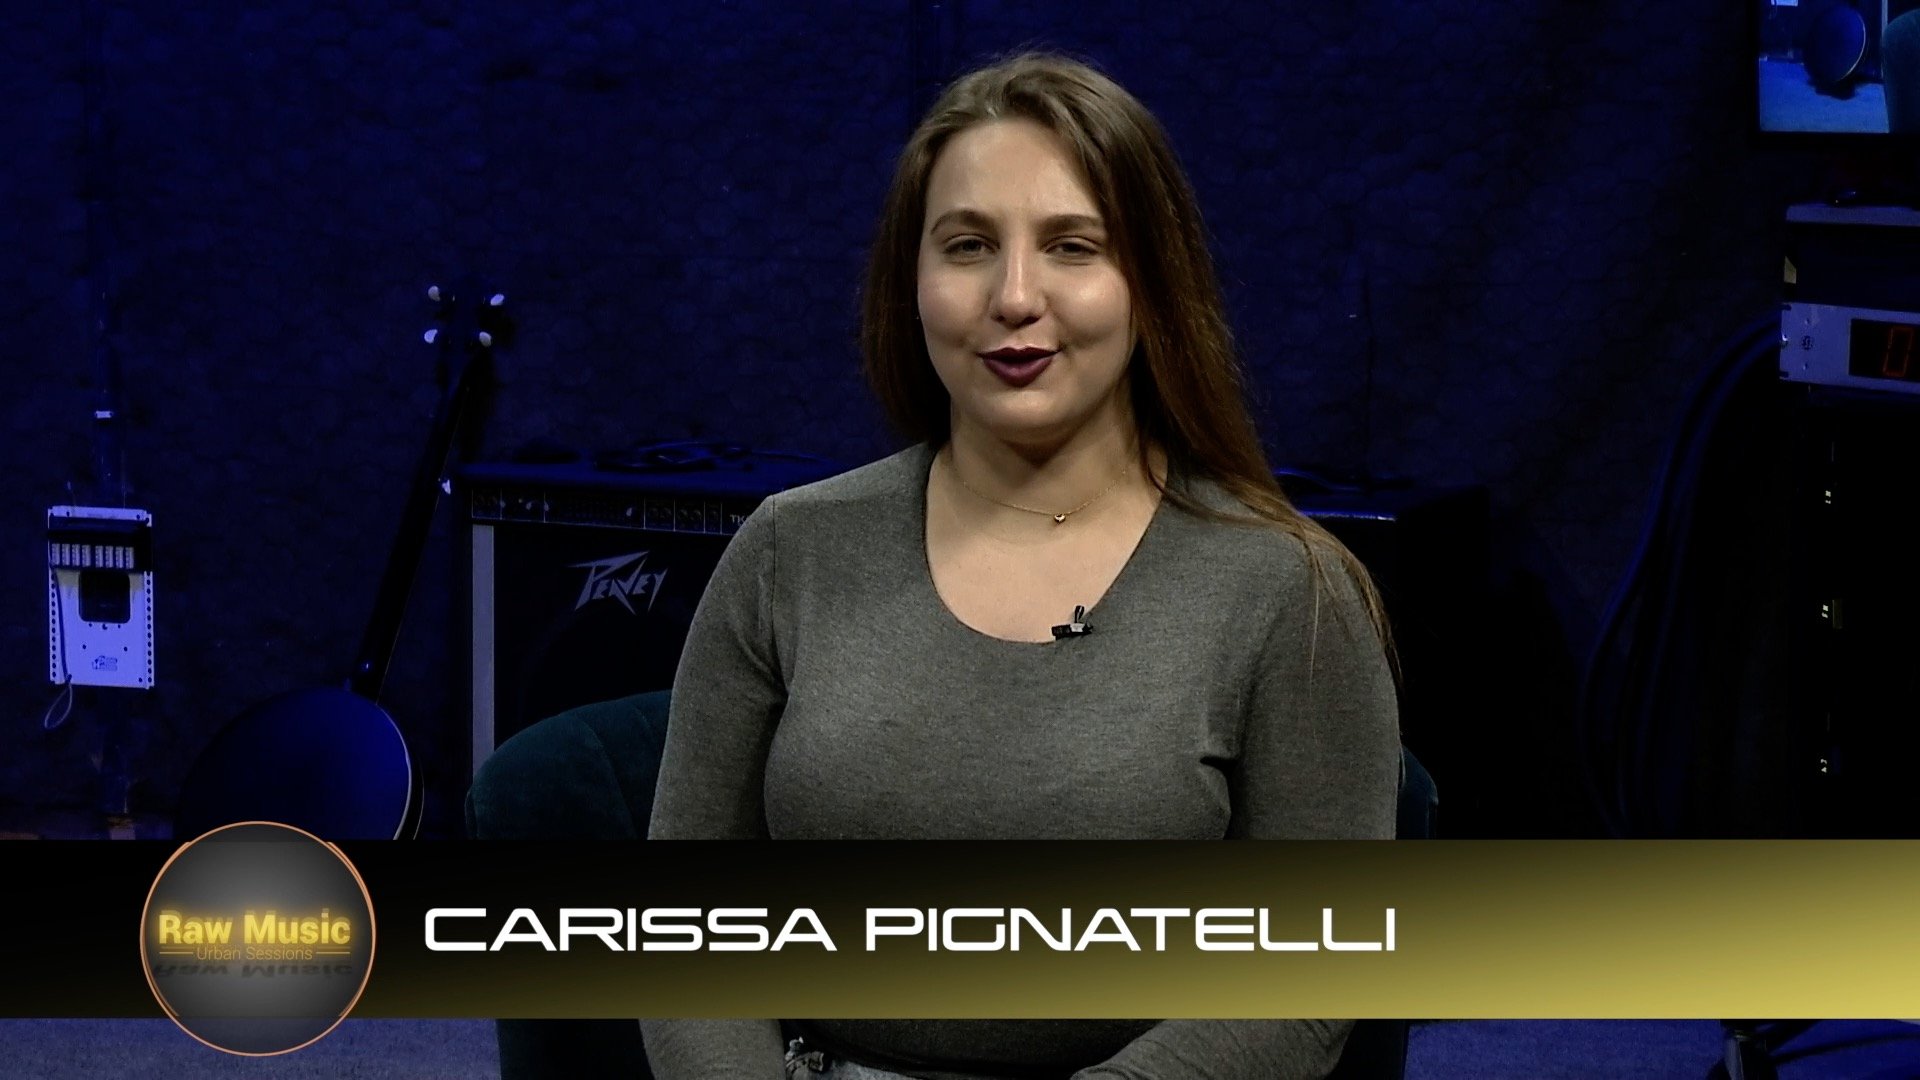 Carissa Pignatelli